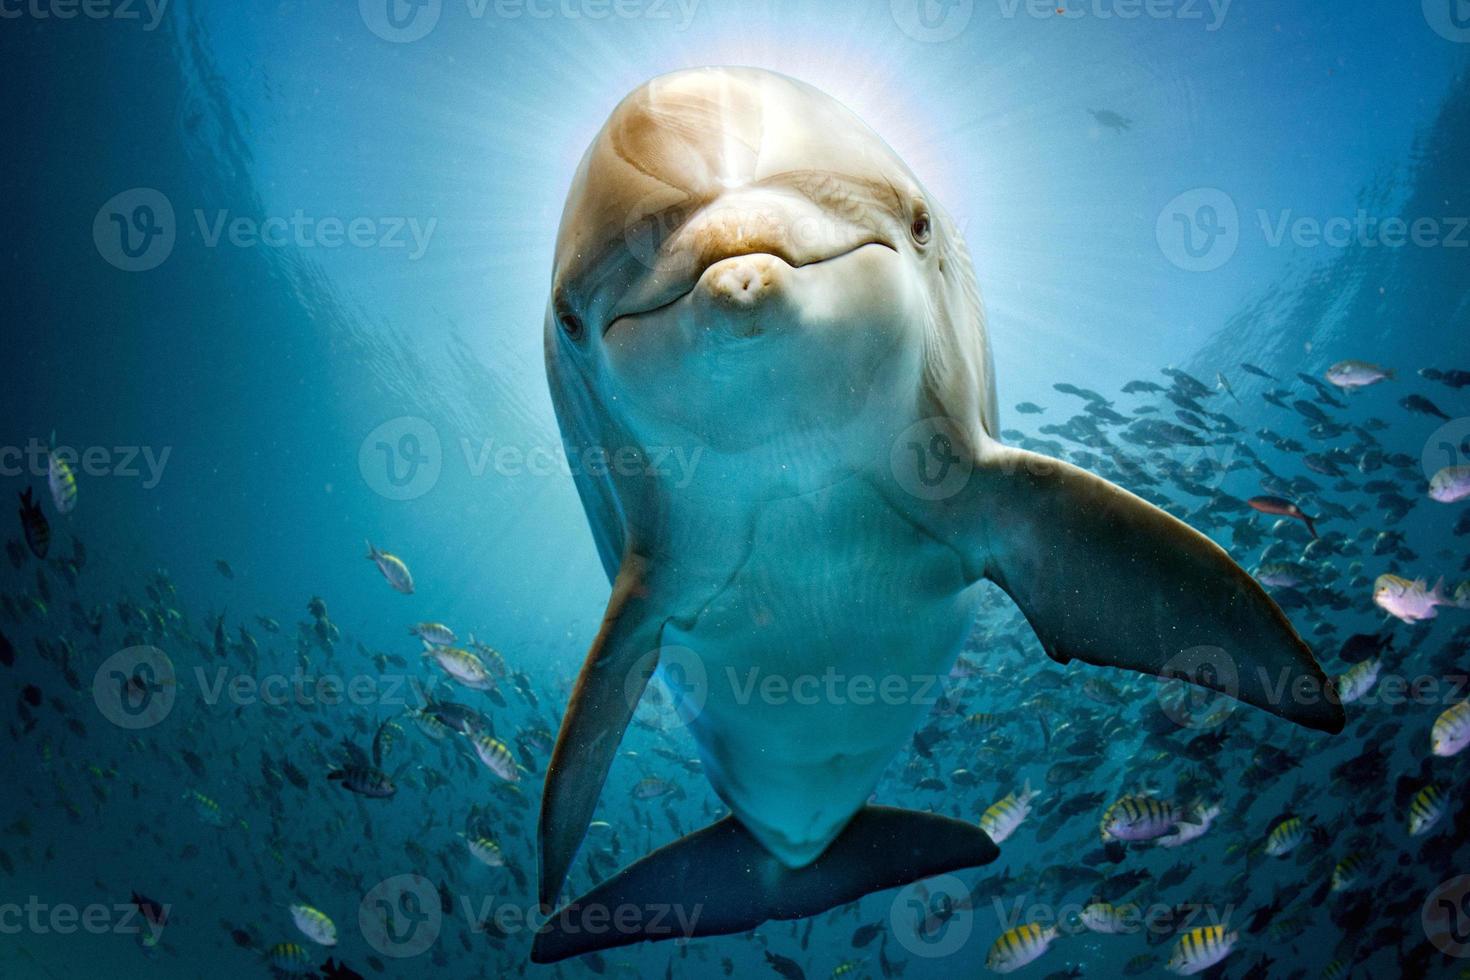 golfinho debaixo d'água no recife perto de você foto